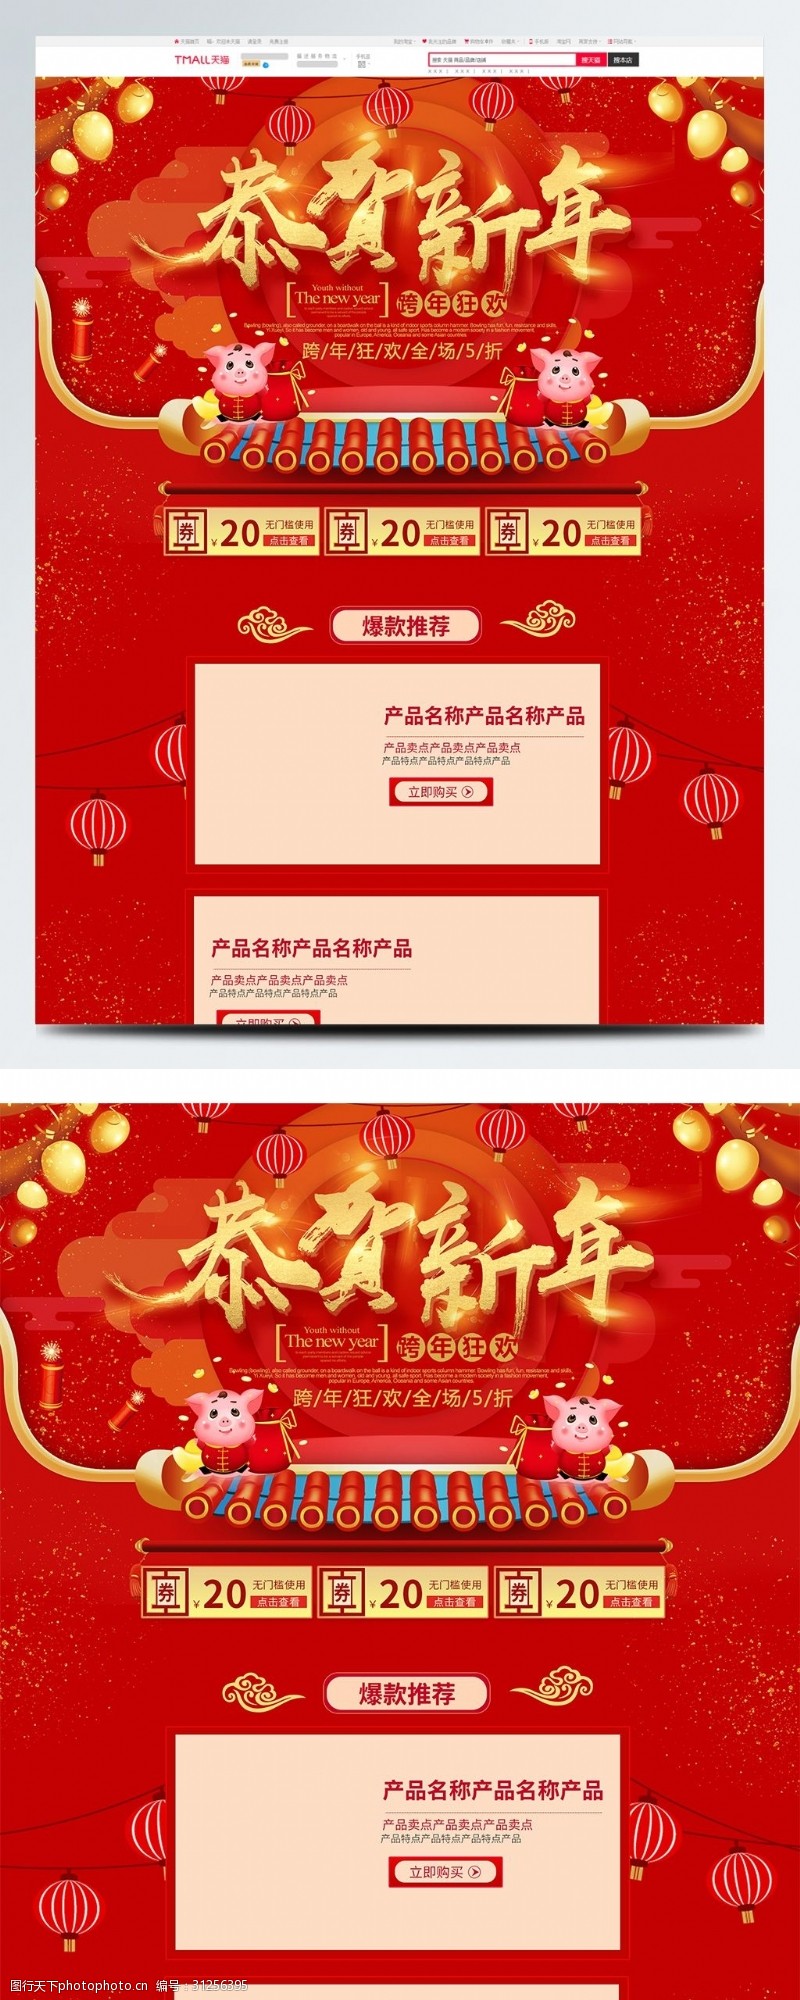 全场商品5折红色喜庆电商促销跨年狂欢淘宝首页促销模板